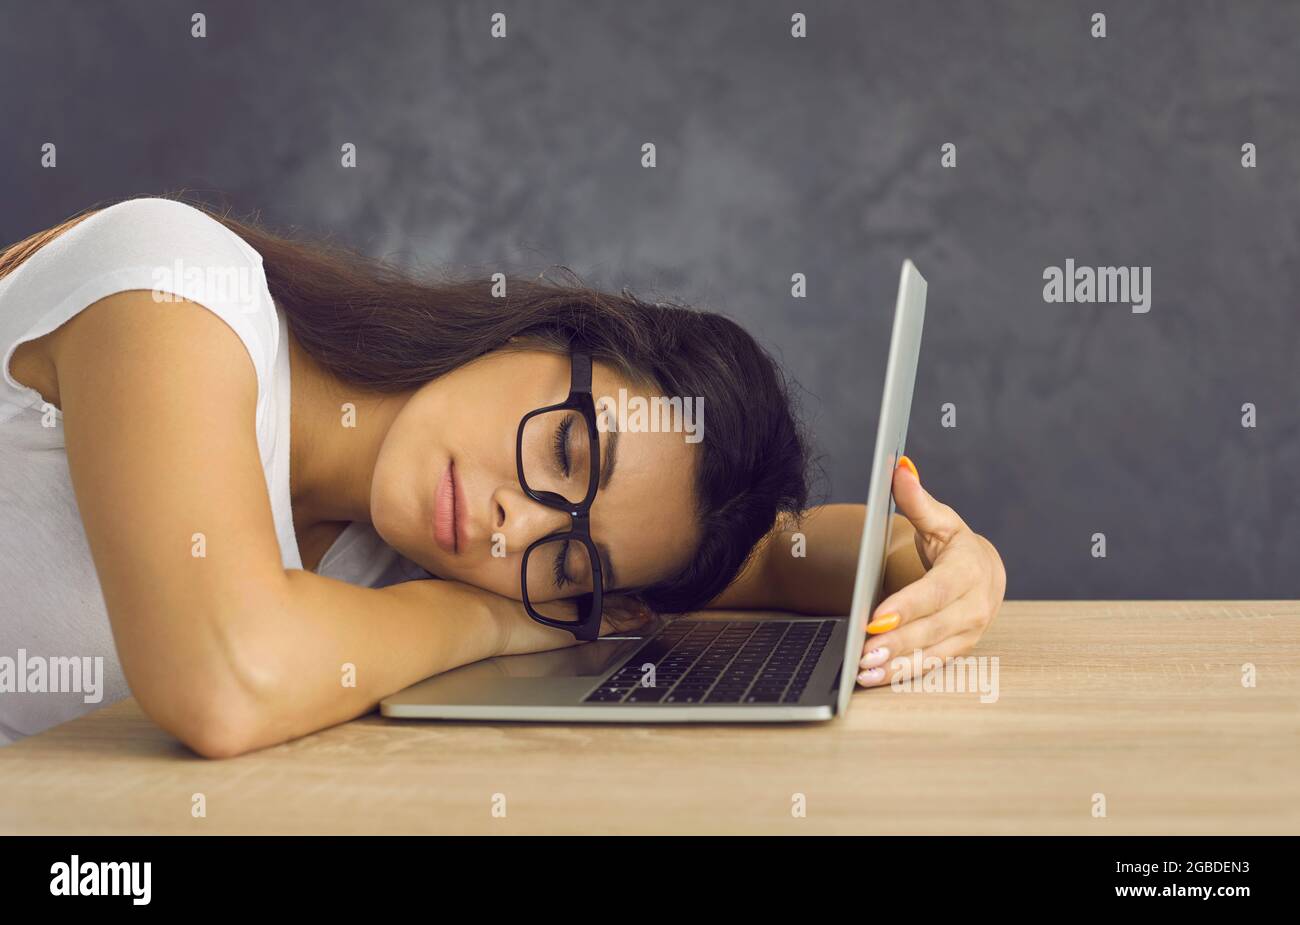 Stanco studente universitario esausto che dormiva sulla scrivania con il suo computer portatile Foto Stock